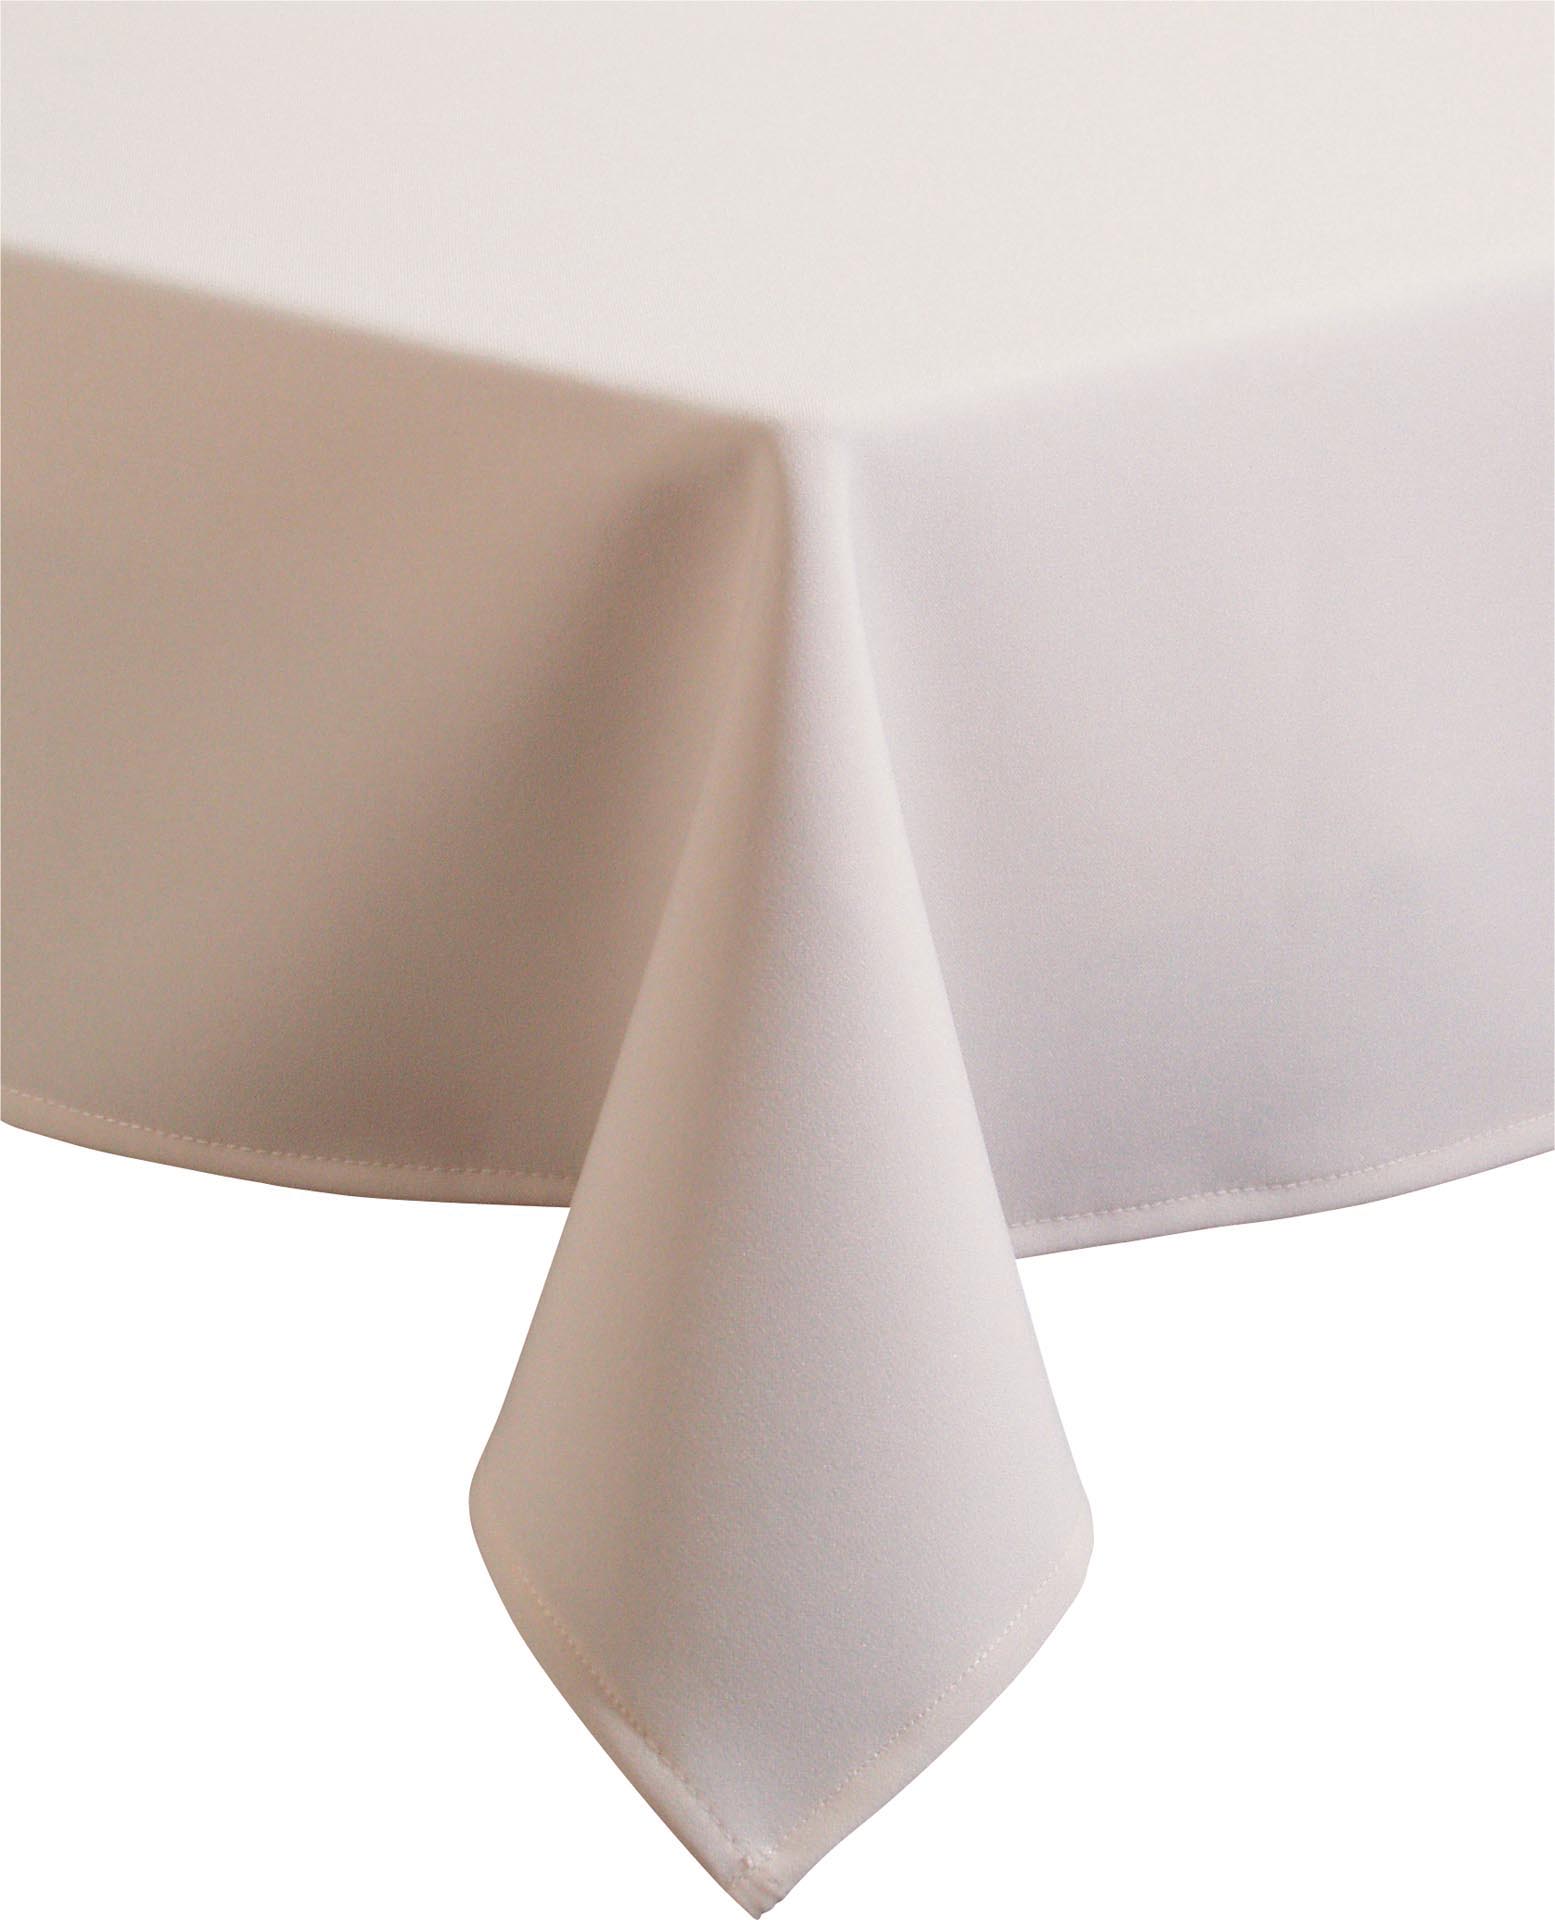 Tischdecke ecru Excaliber 80x80 cm 100% Polyester, auch als Mitteldecke geeignet